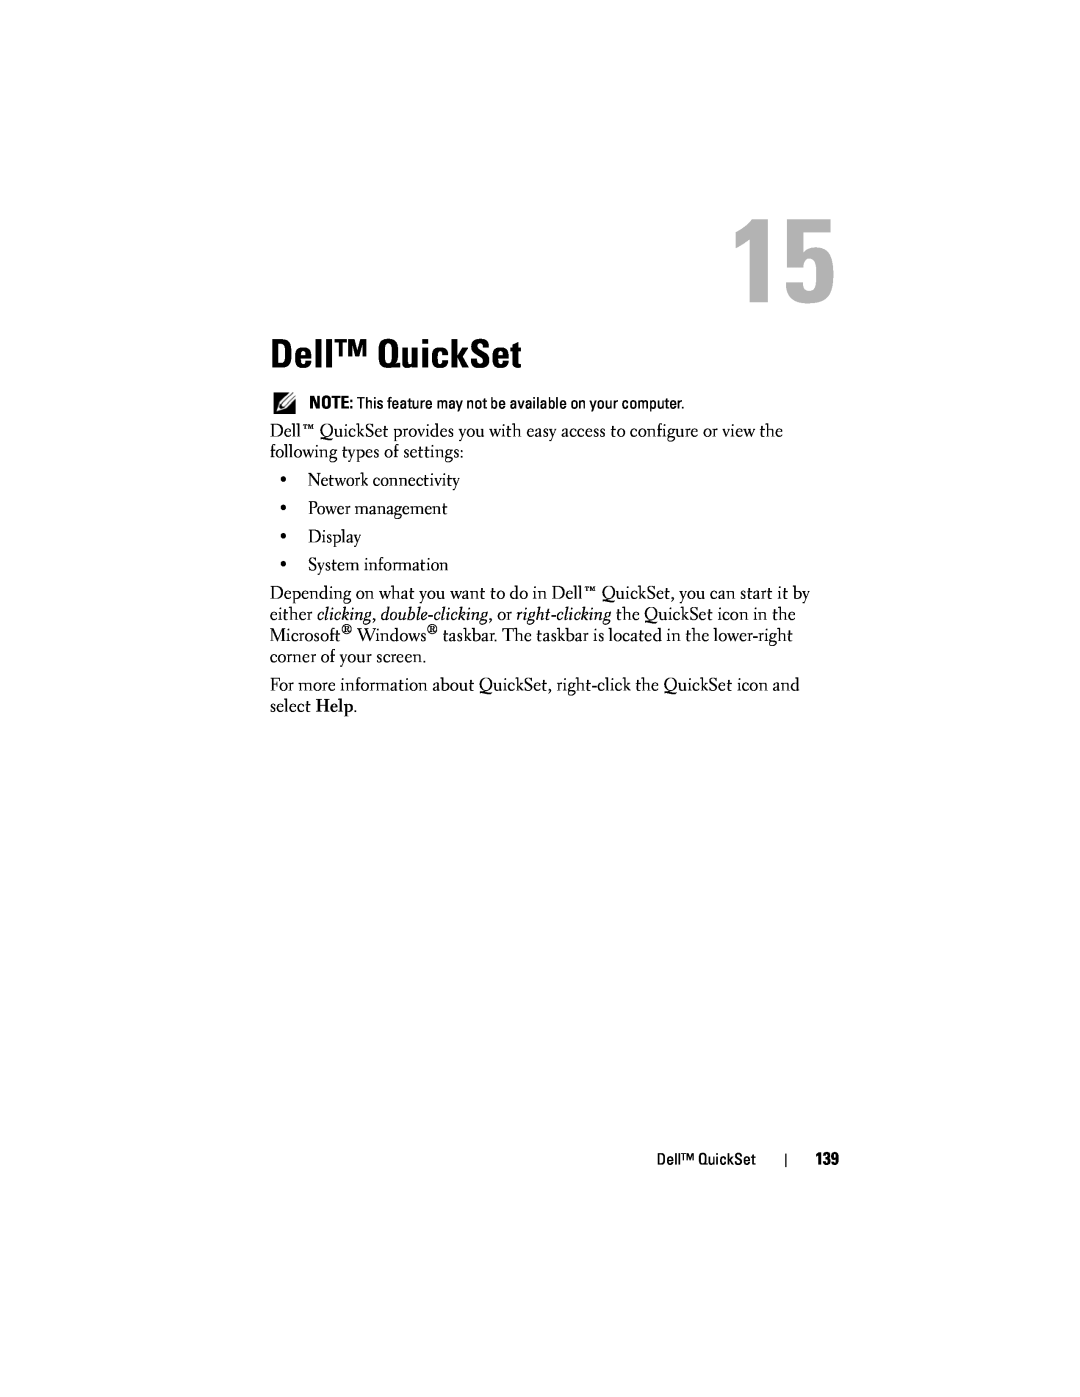 Dell D530 manual Dell QuickSet 